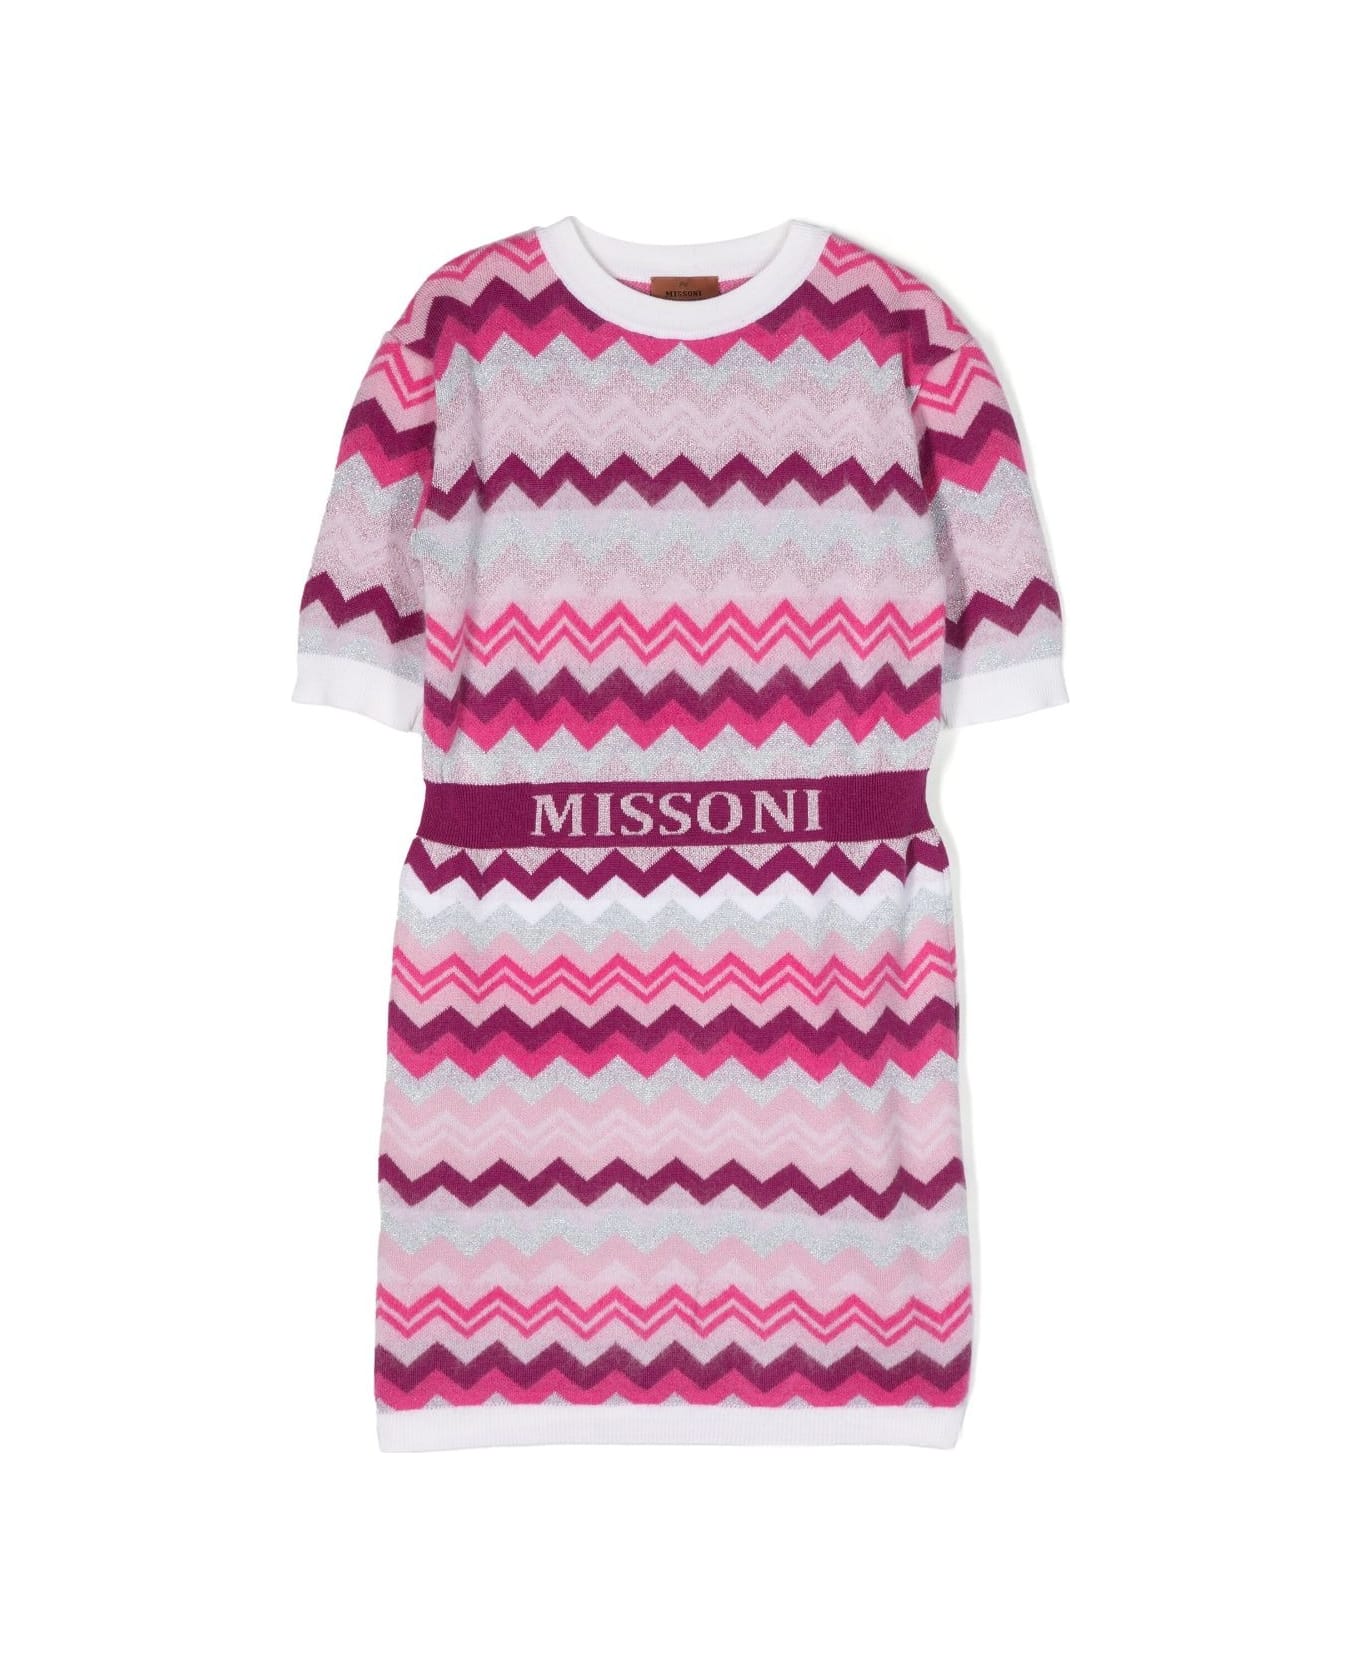 Missoni Kids Pink And Fuchsia Chevron Patterned Dress - C スーツ